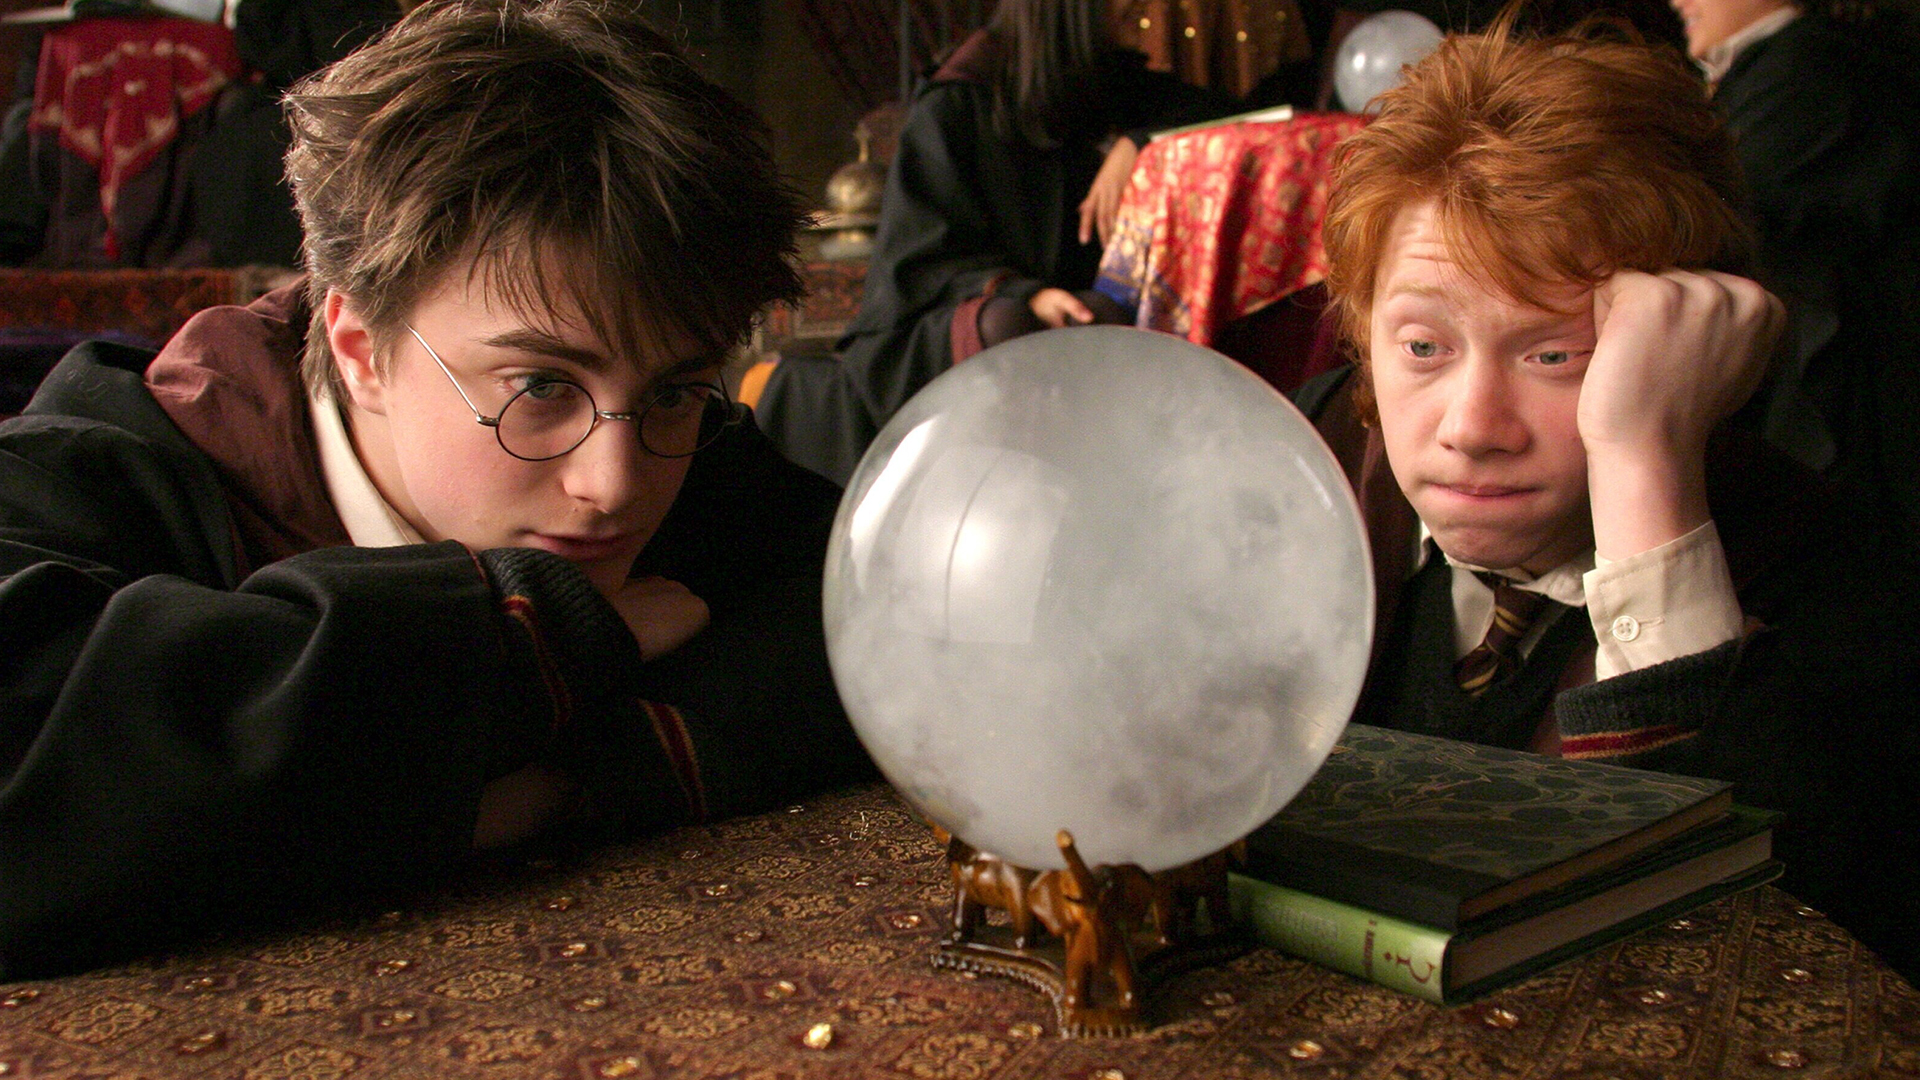 Otestuj sa: Spoznáš, z ktorej časti Harryho Pottera je vybraný záber?